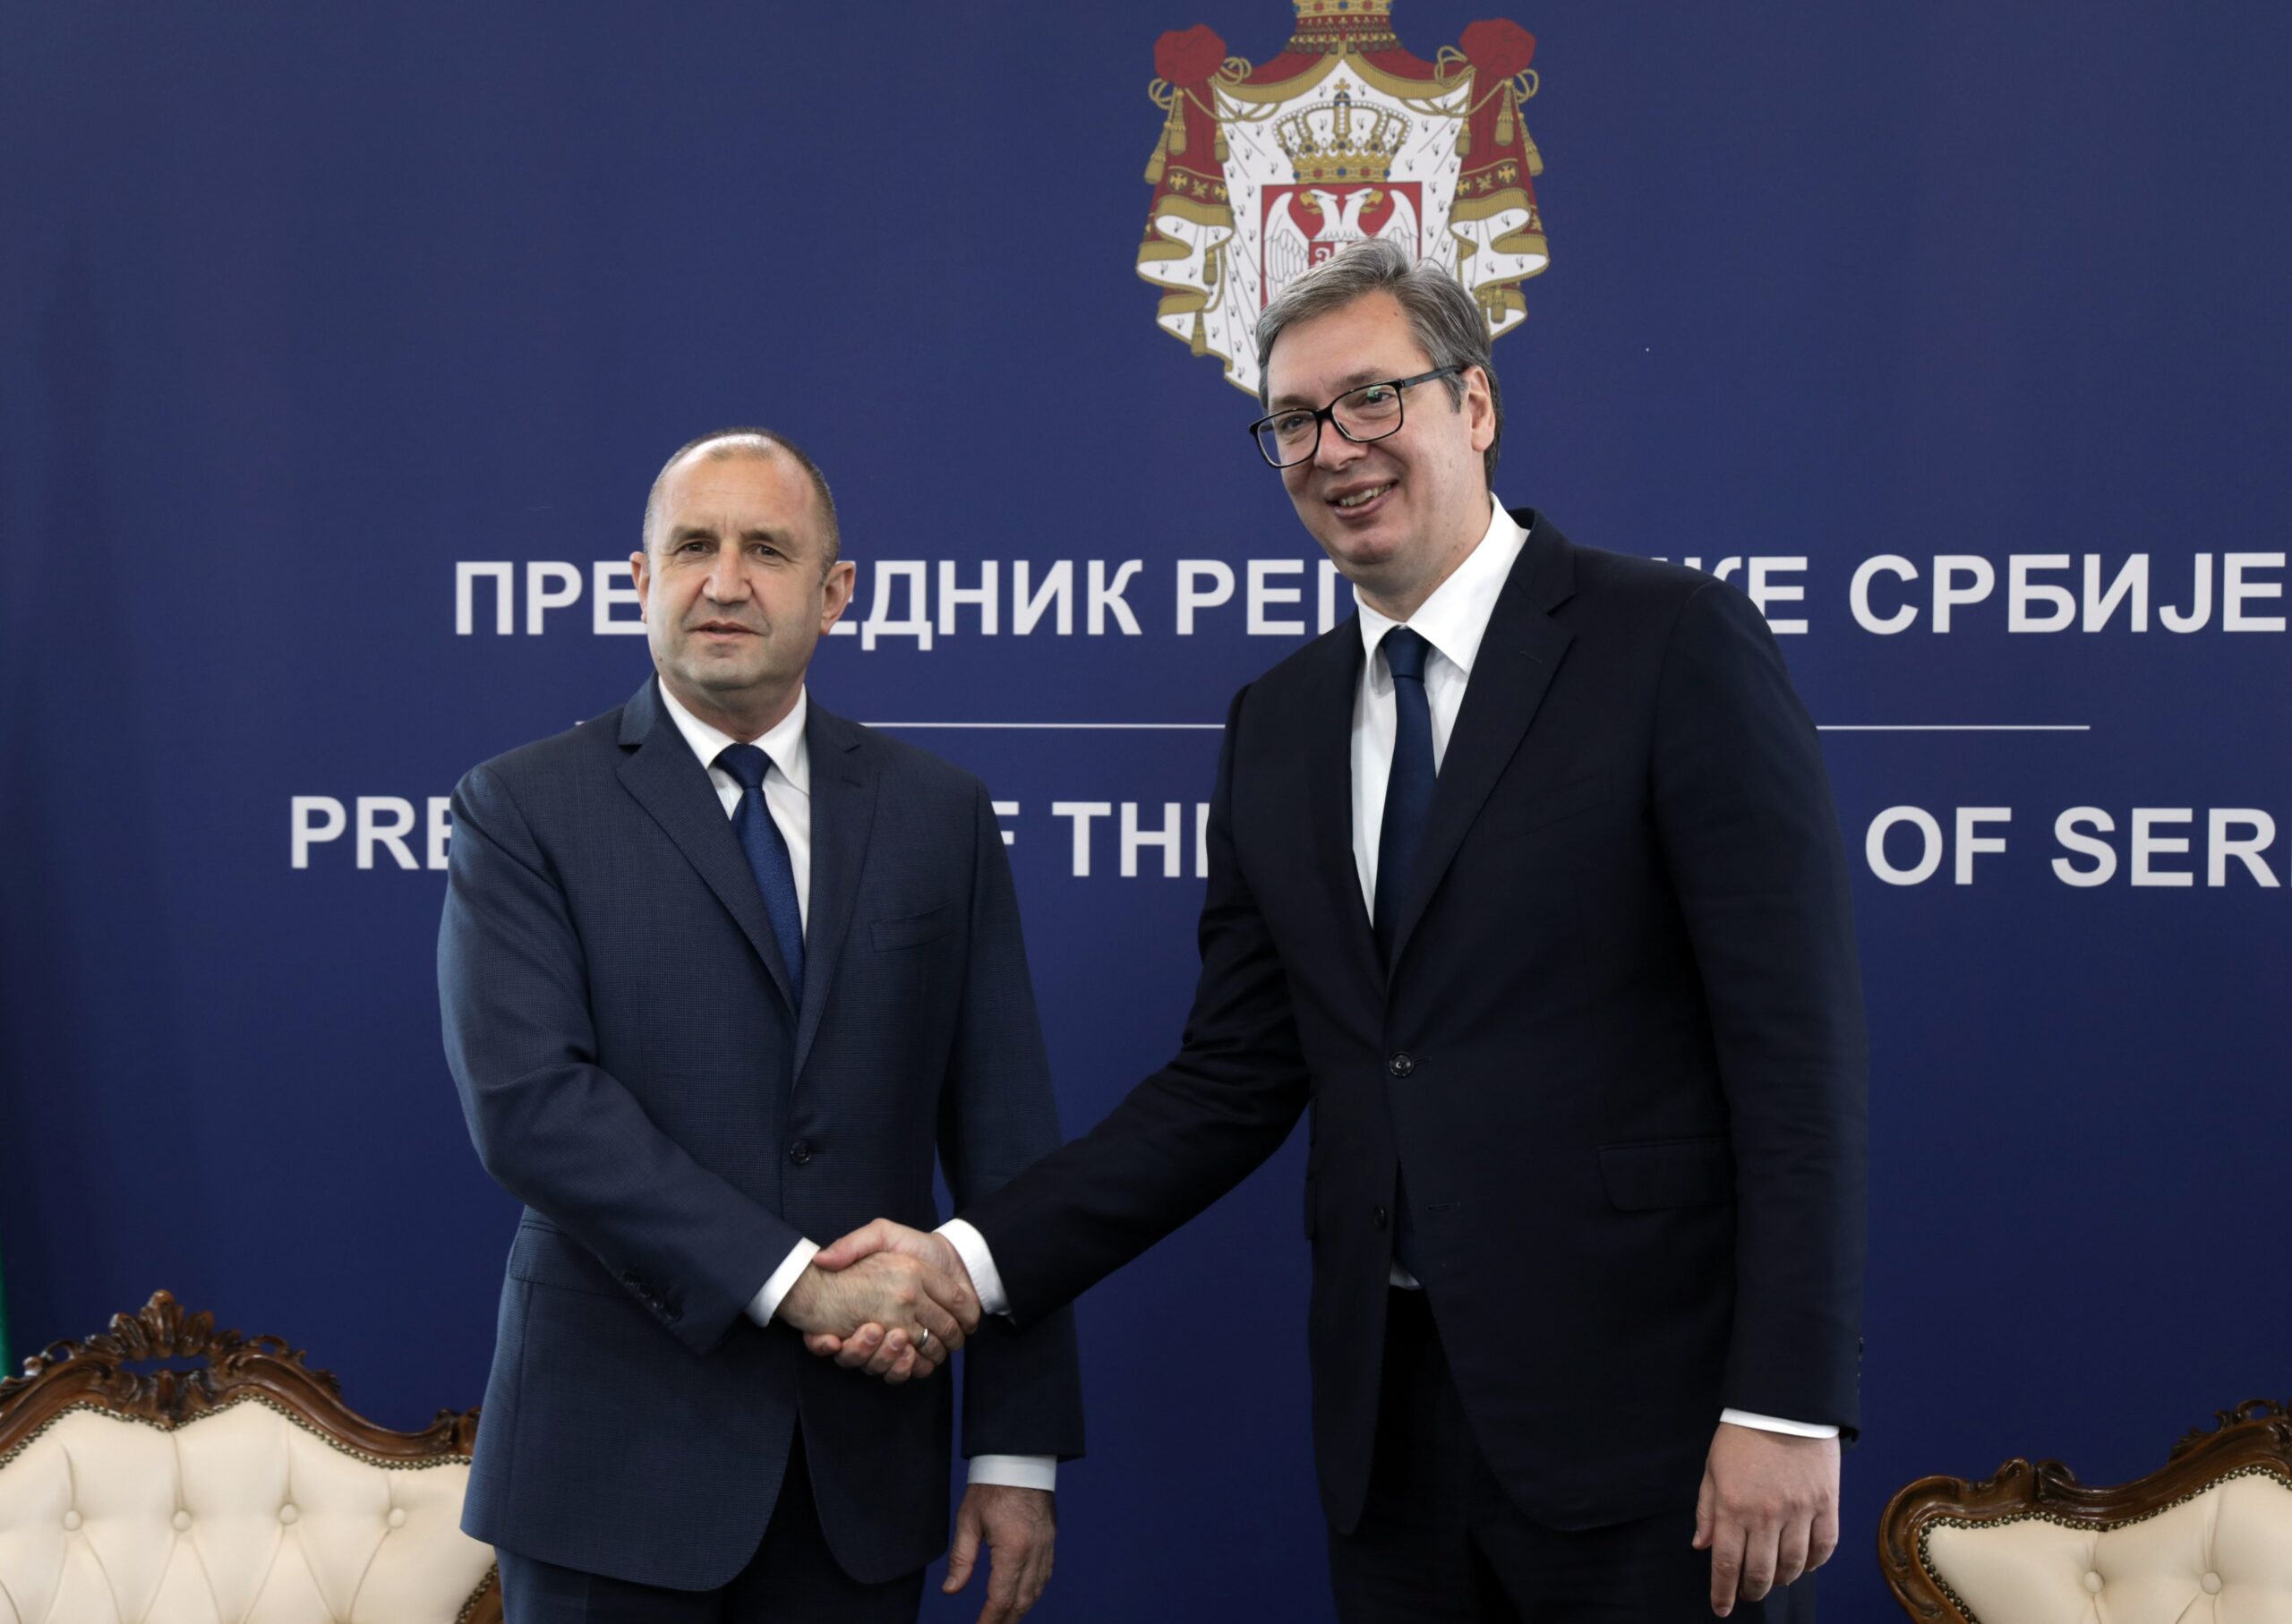 Президентът: Задълбочаването на икономическата и транспортна свързаност между България и Сърбия е инвестиция в общото европейско бъдеще на региона